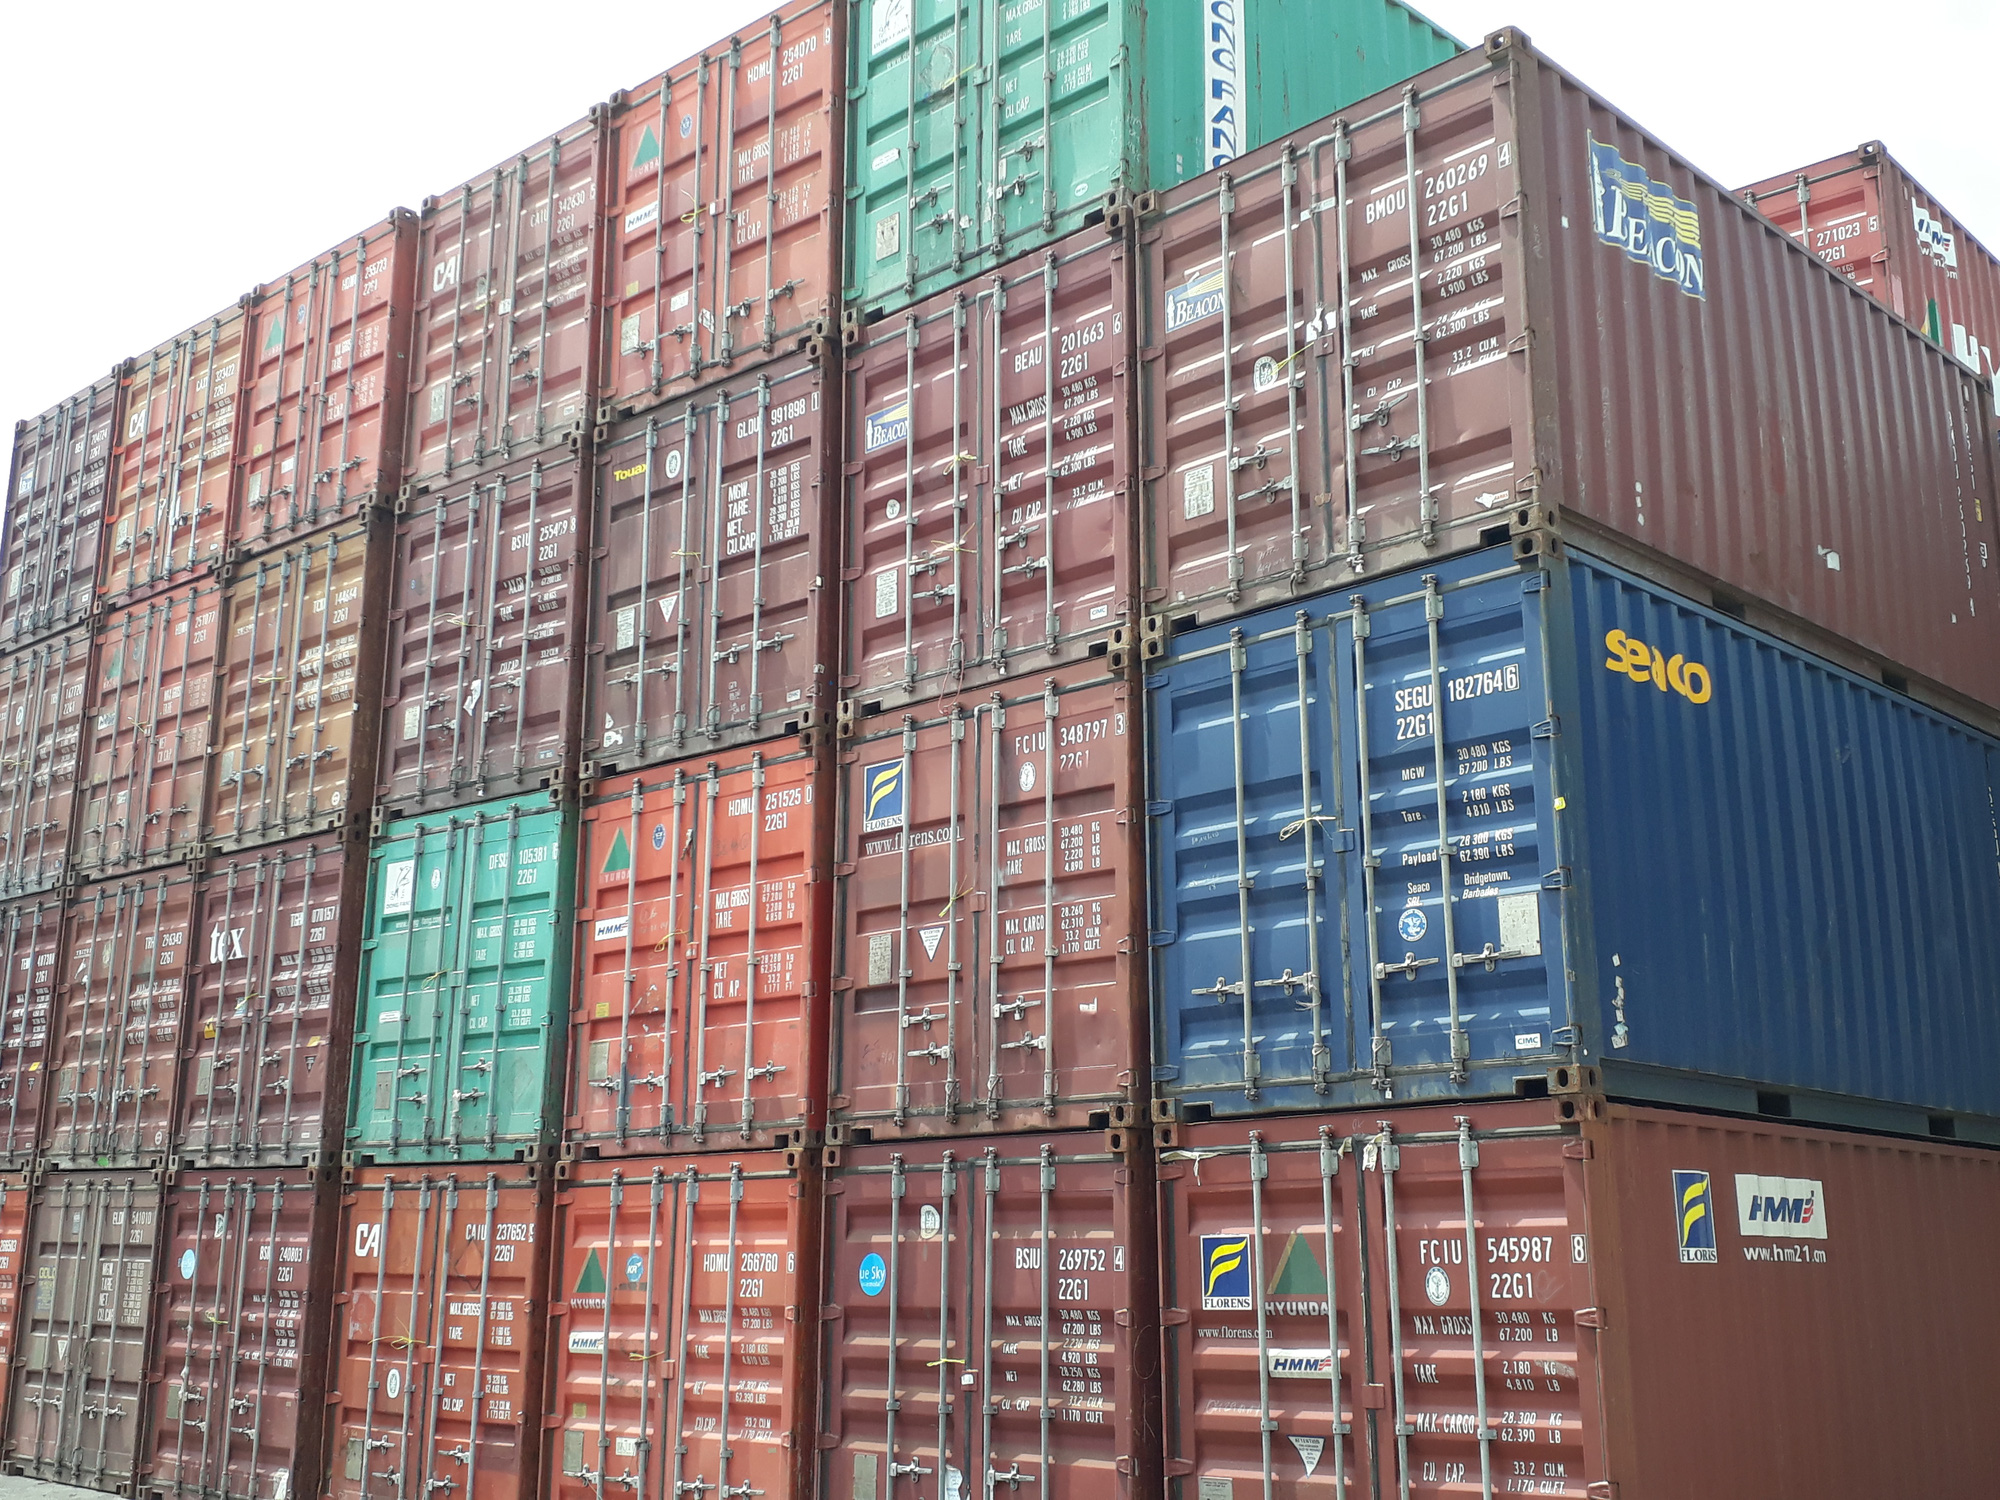 Sẽ thanh lý hơn 3.000 container hàng ngoại vô chủ ở các cảng - Ảnh 1.